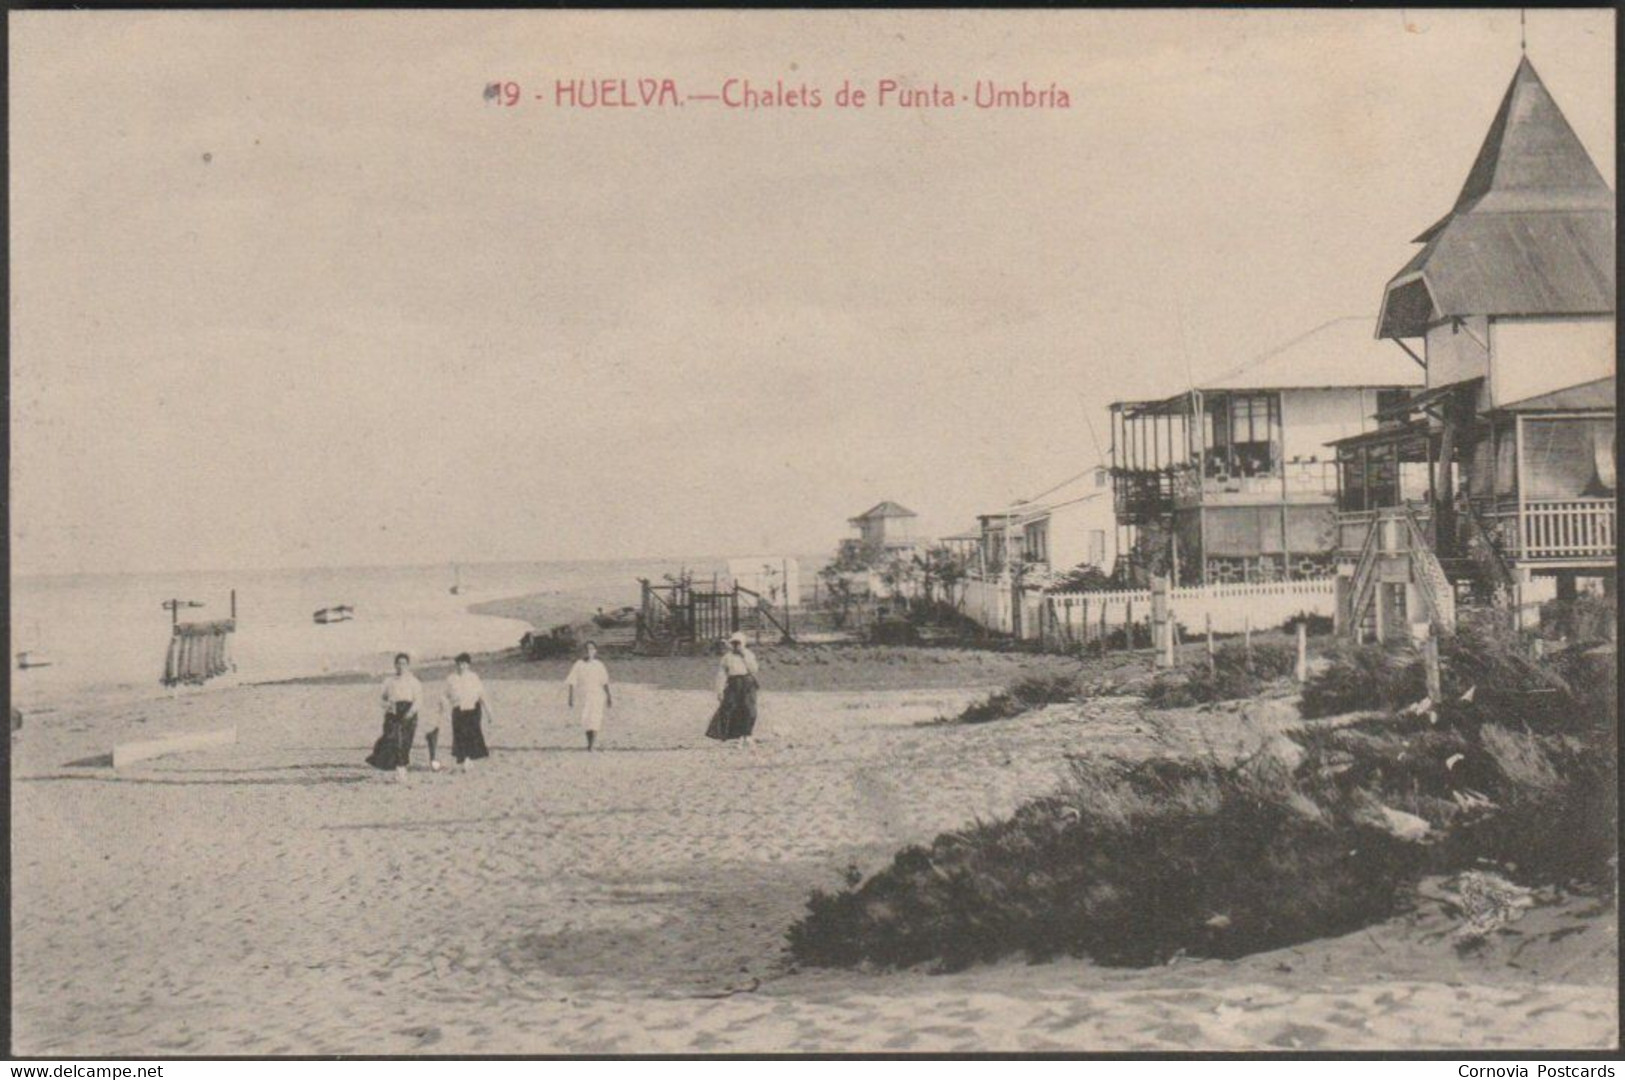 Chalets De Punta-Umbria, Huelva, C.1910s - Tarjeta Postal - Huelva